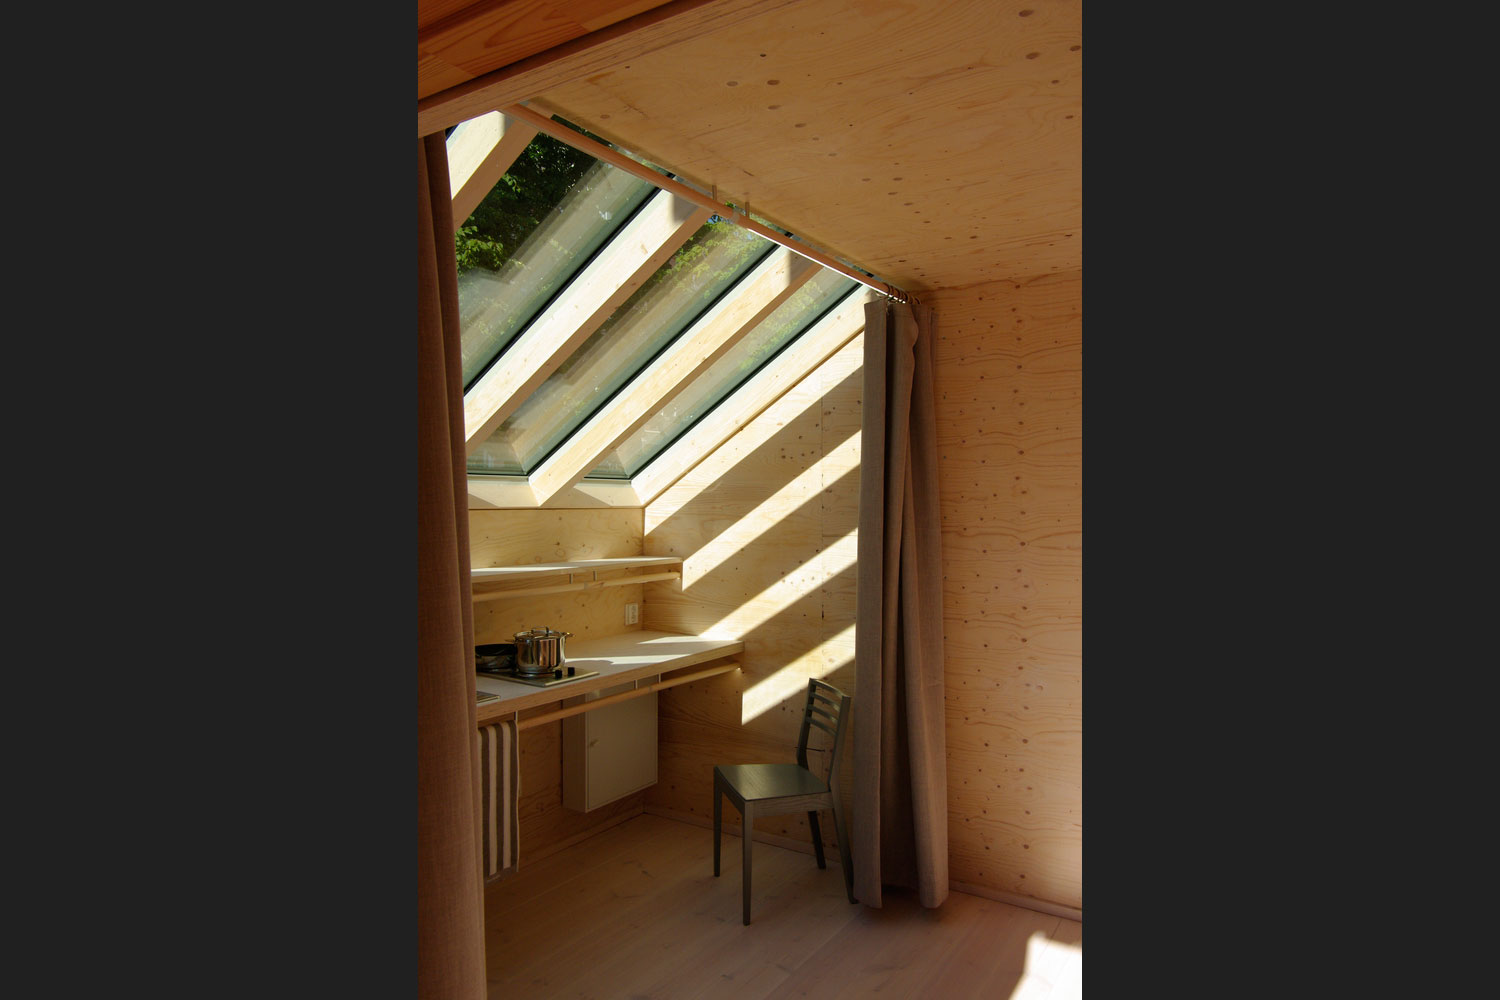 kokoon modular home wood program studio 0015